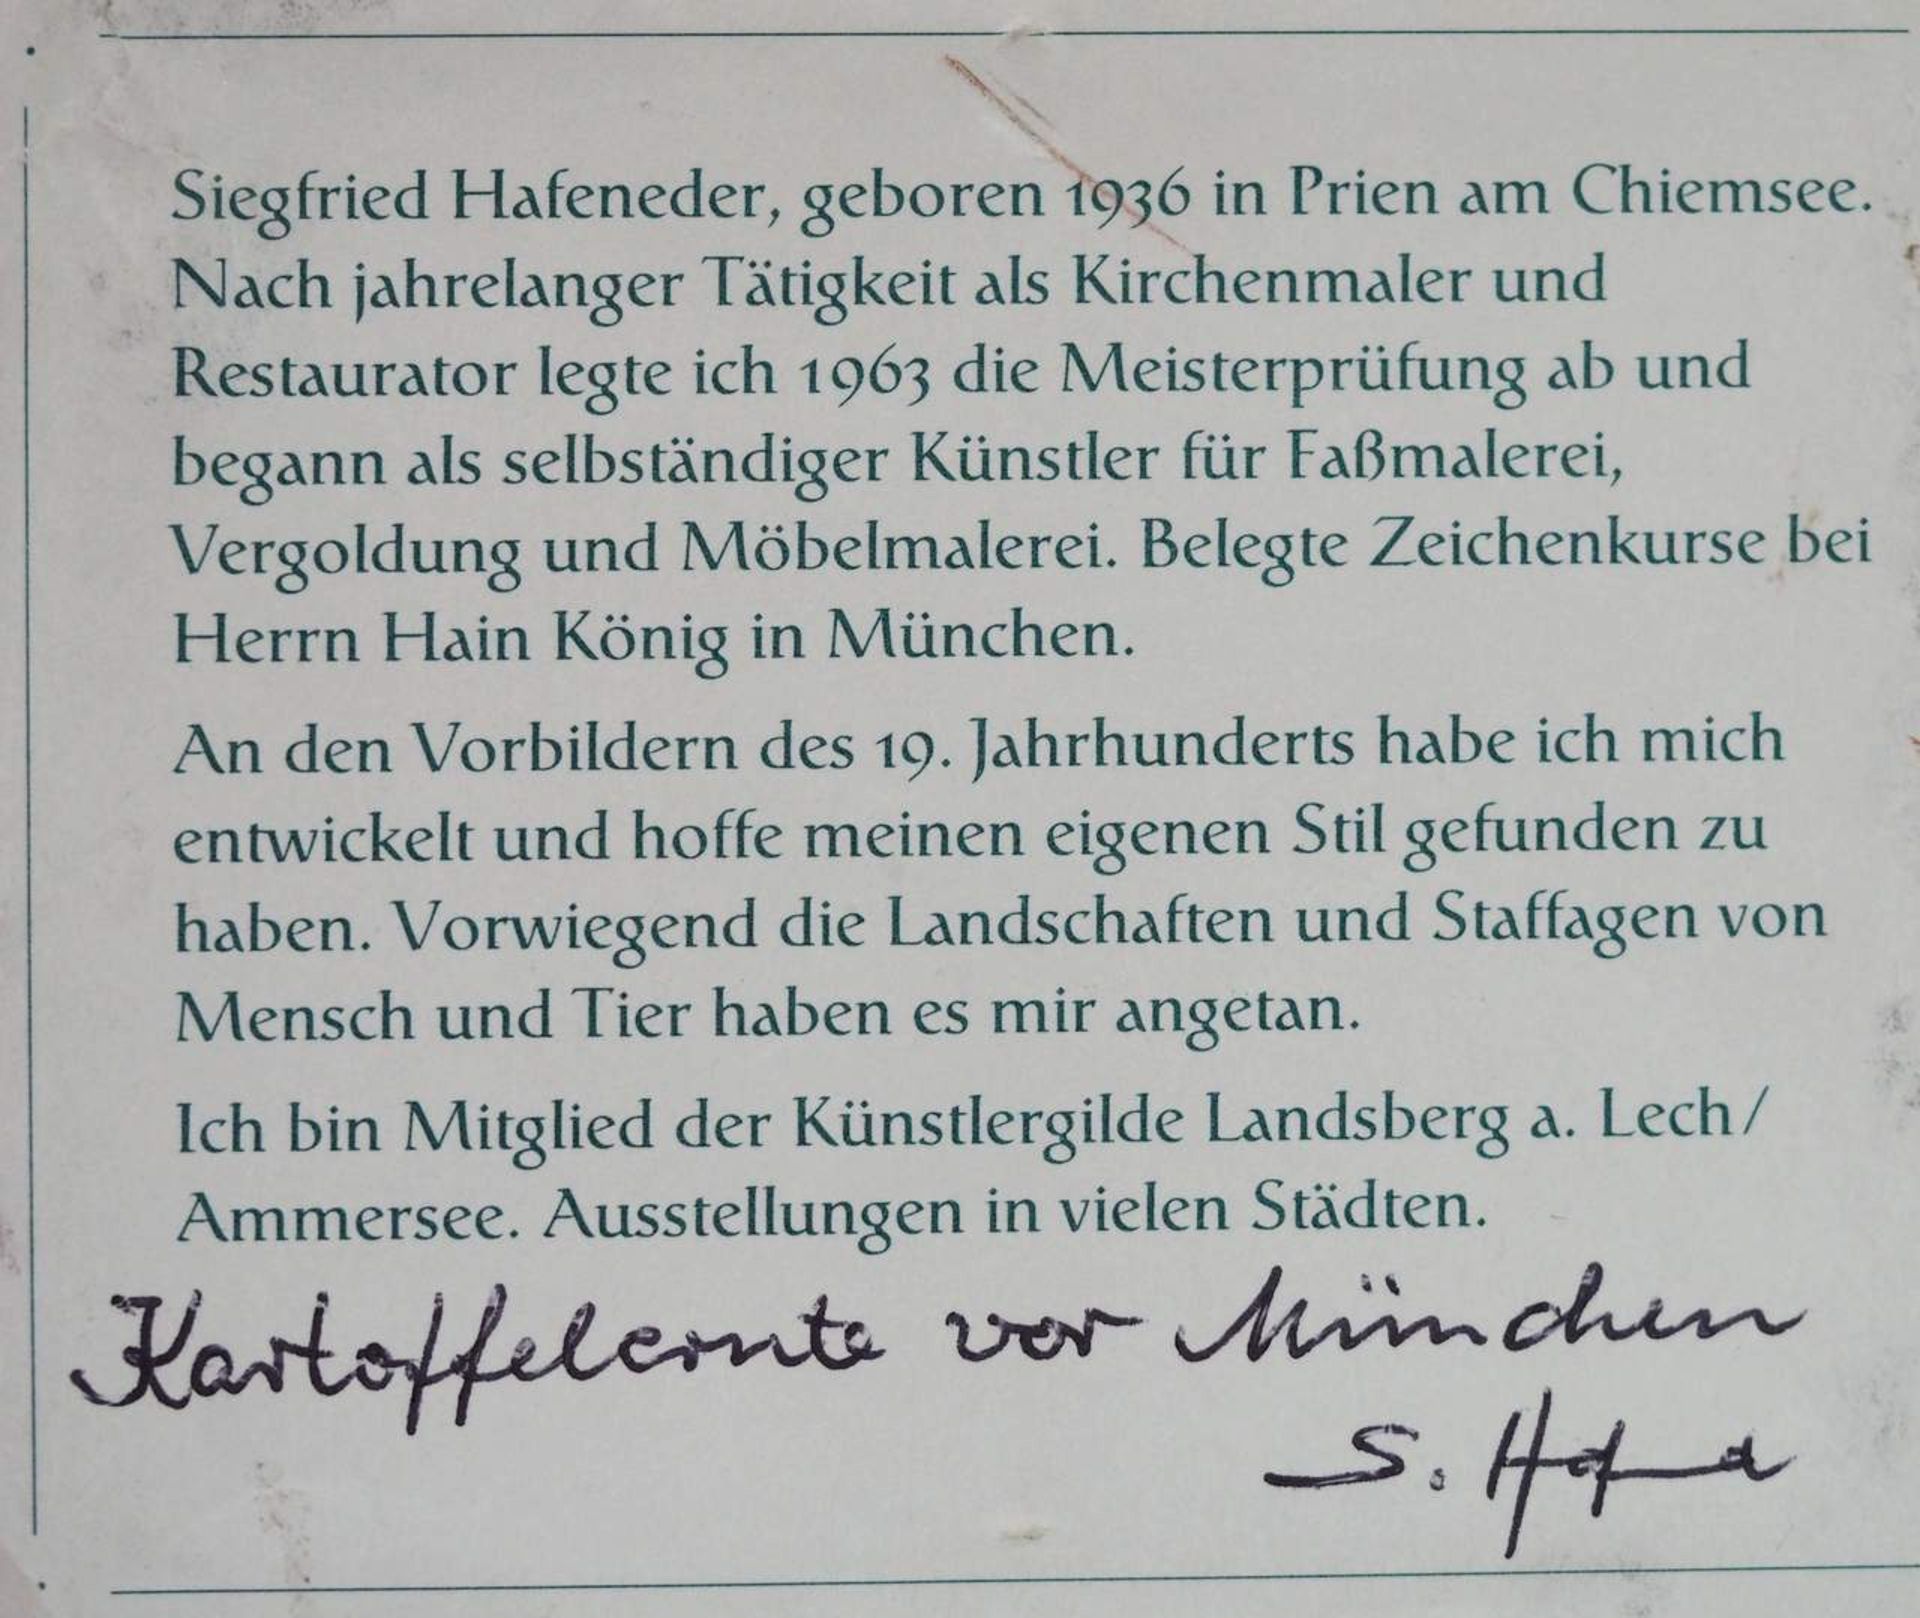 HAFENEDER, Siegfried. "Kartoffelernte vor München". - Bild 5 aus 6